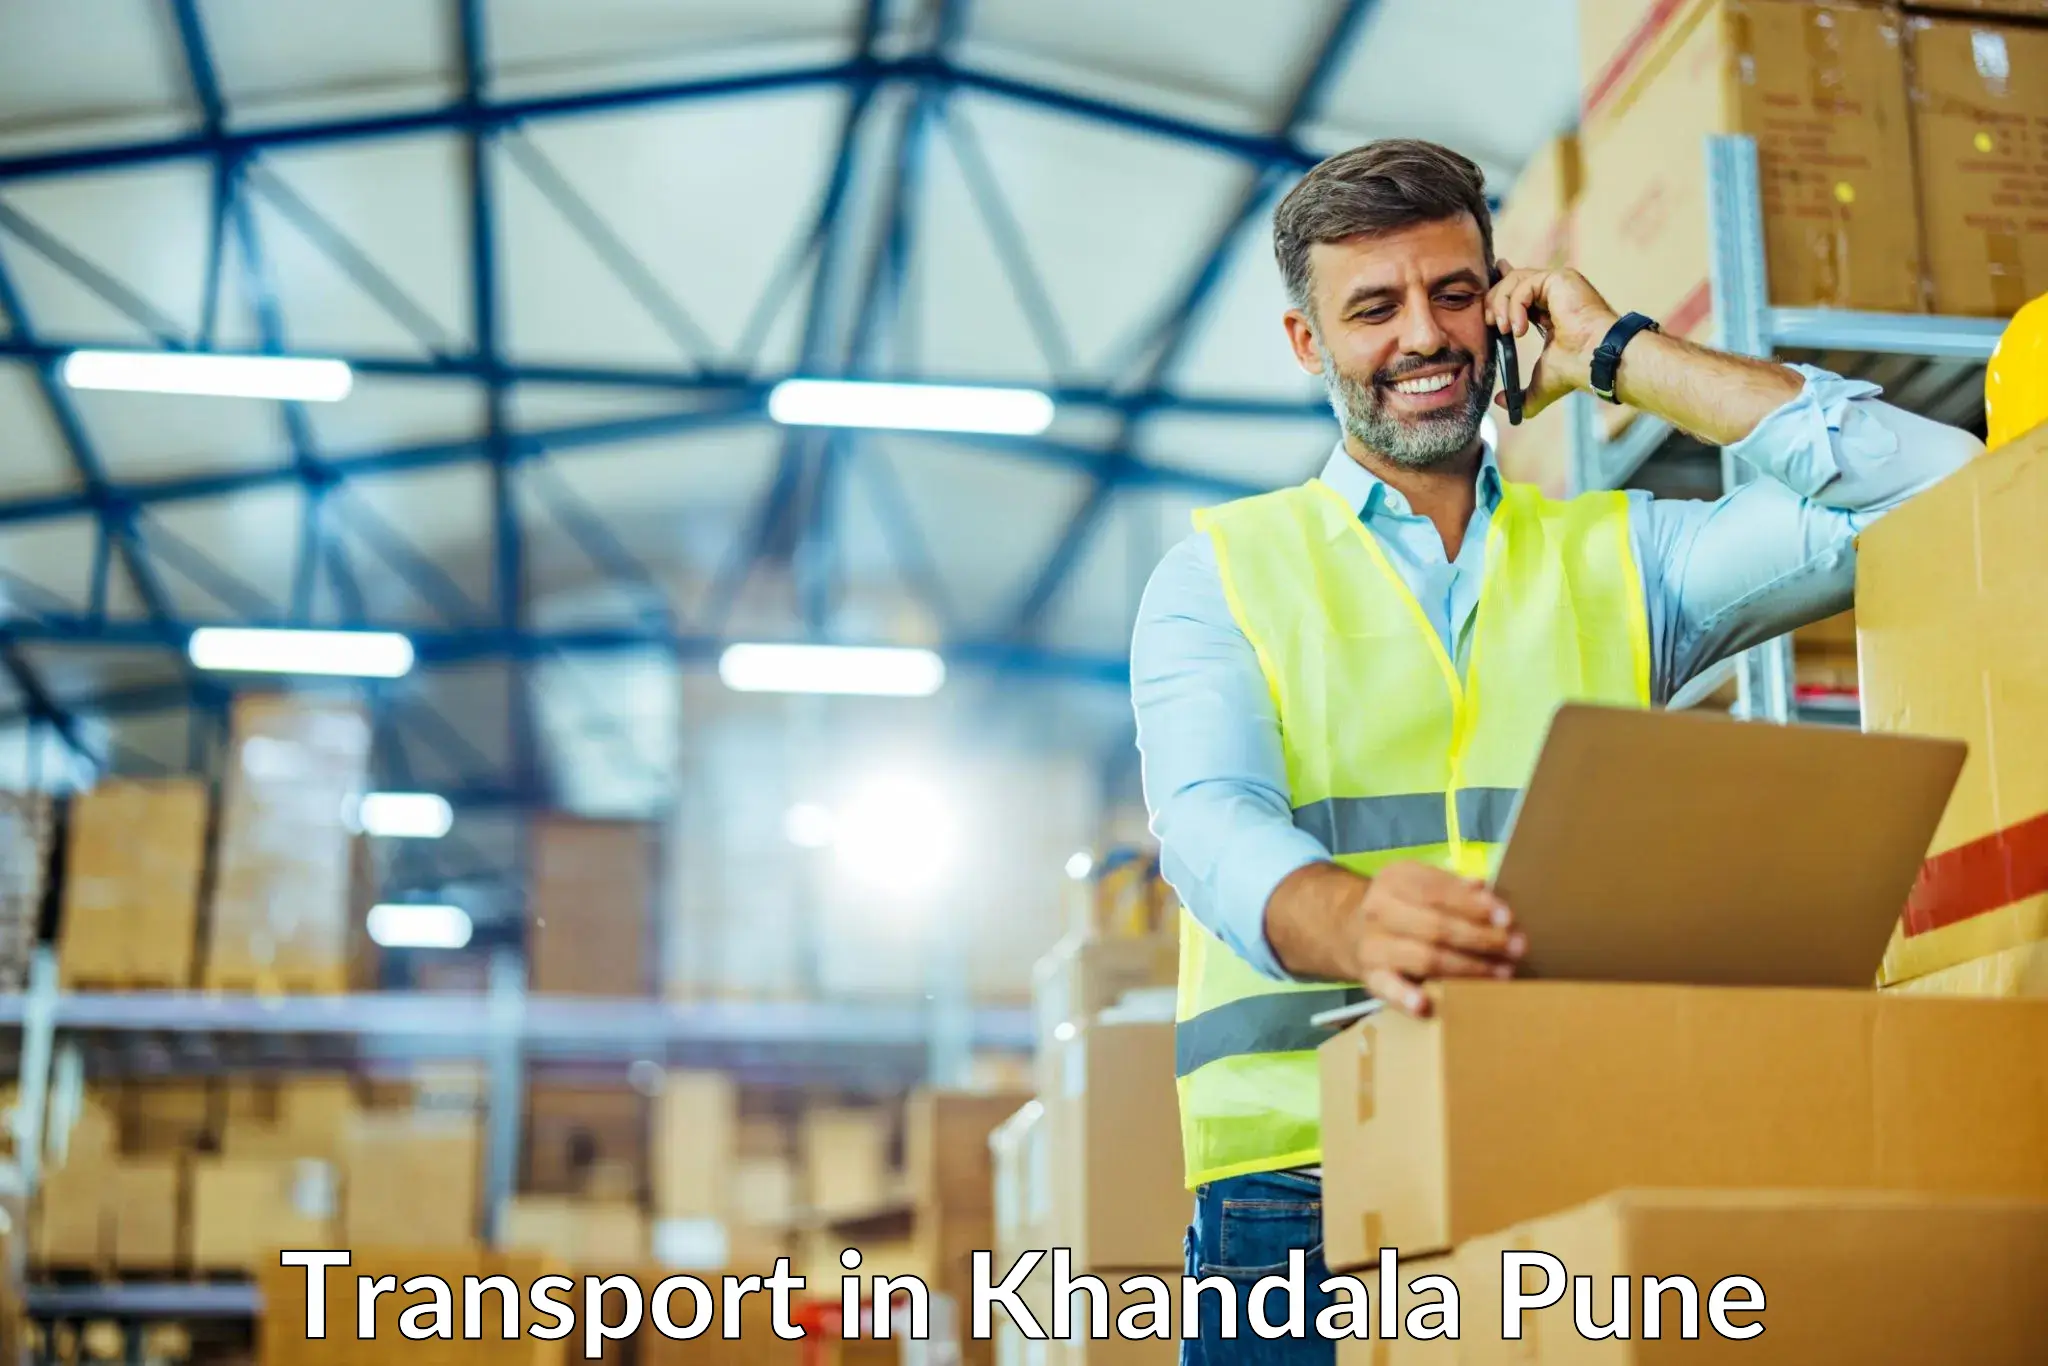 Nearest transport service in Khandala Pune